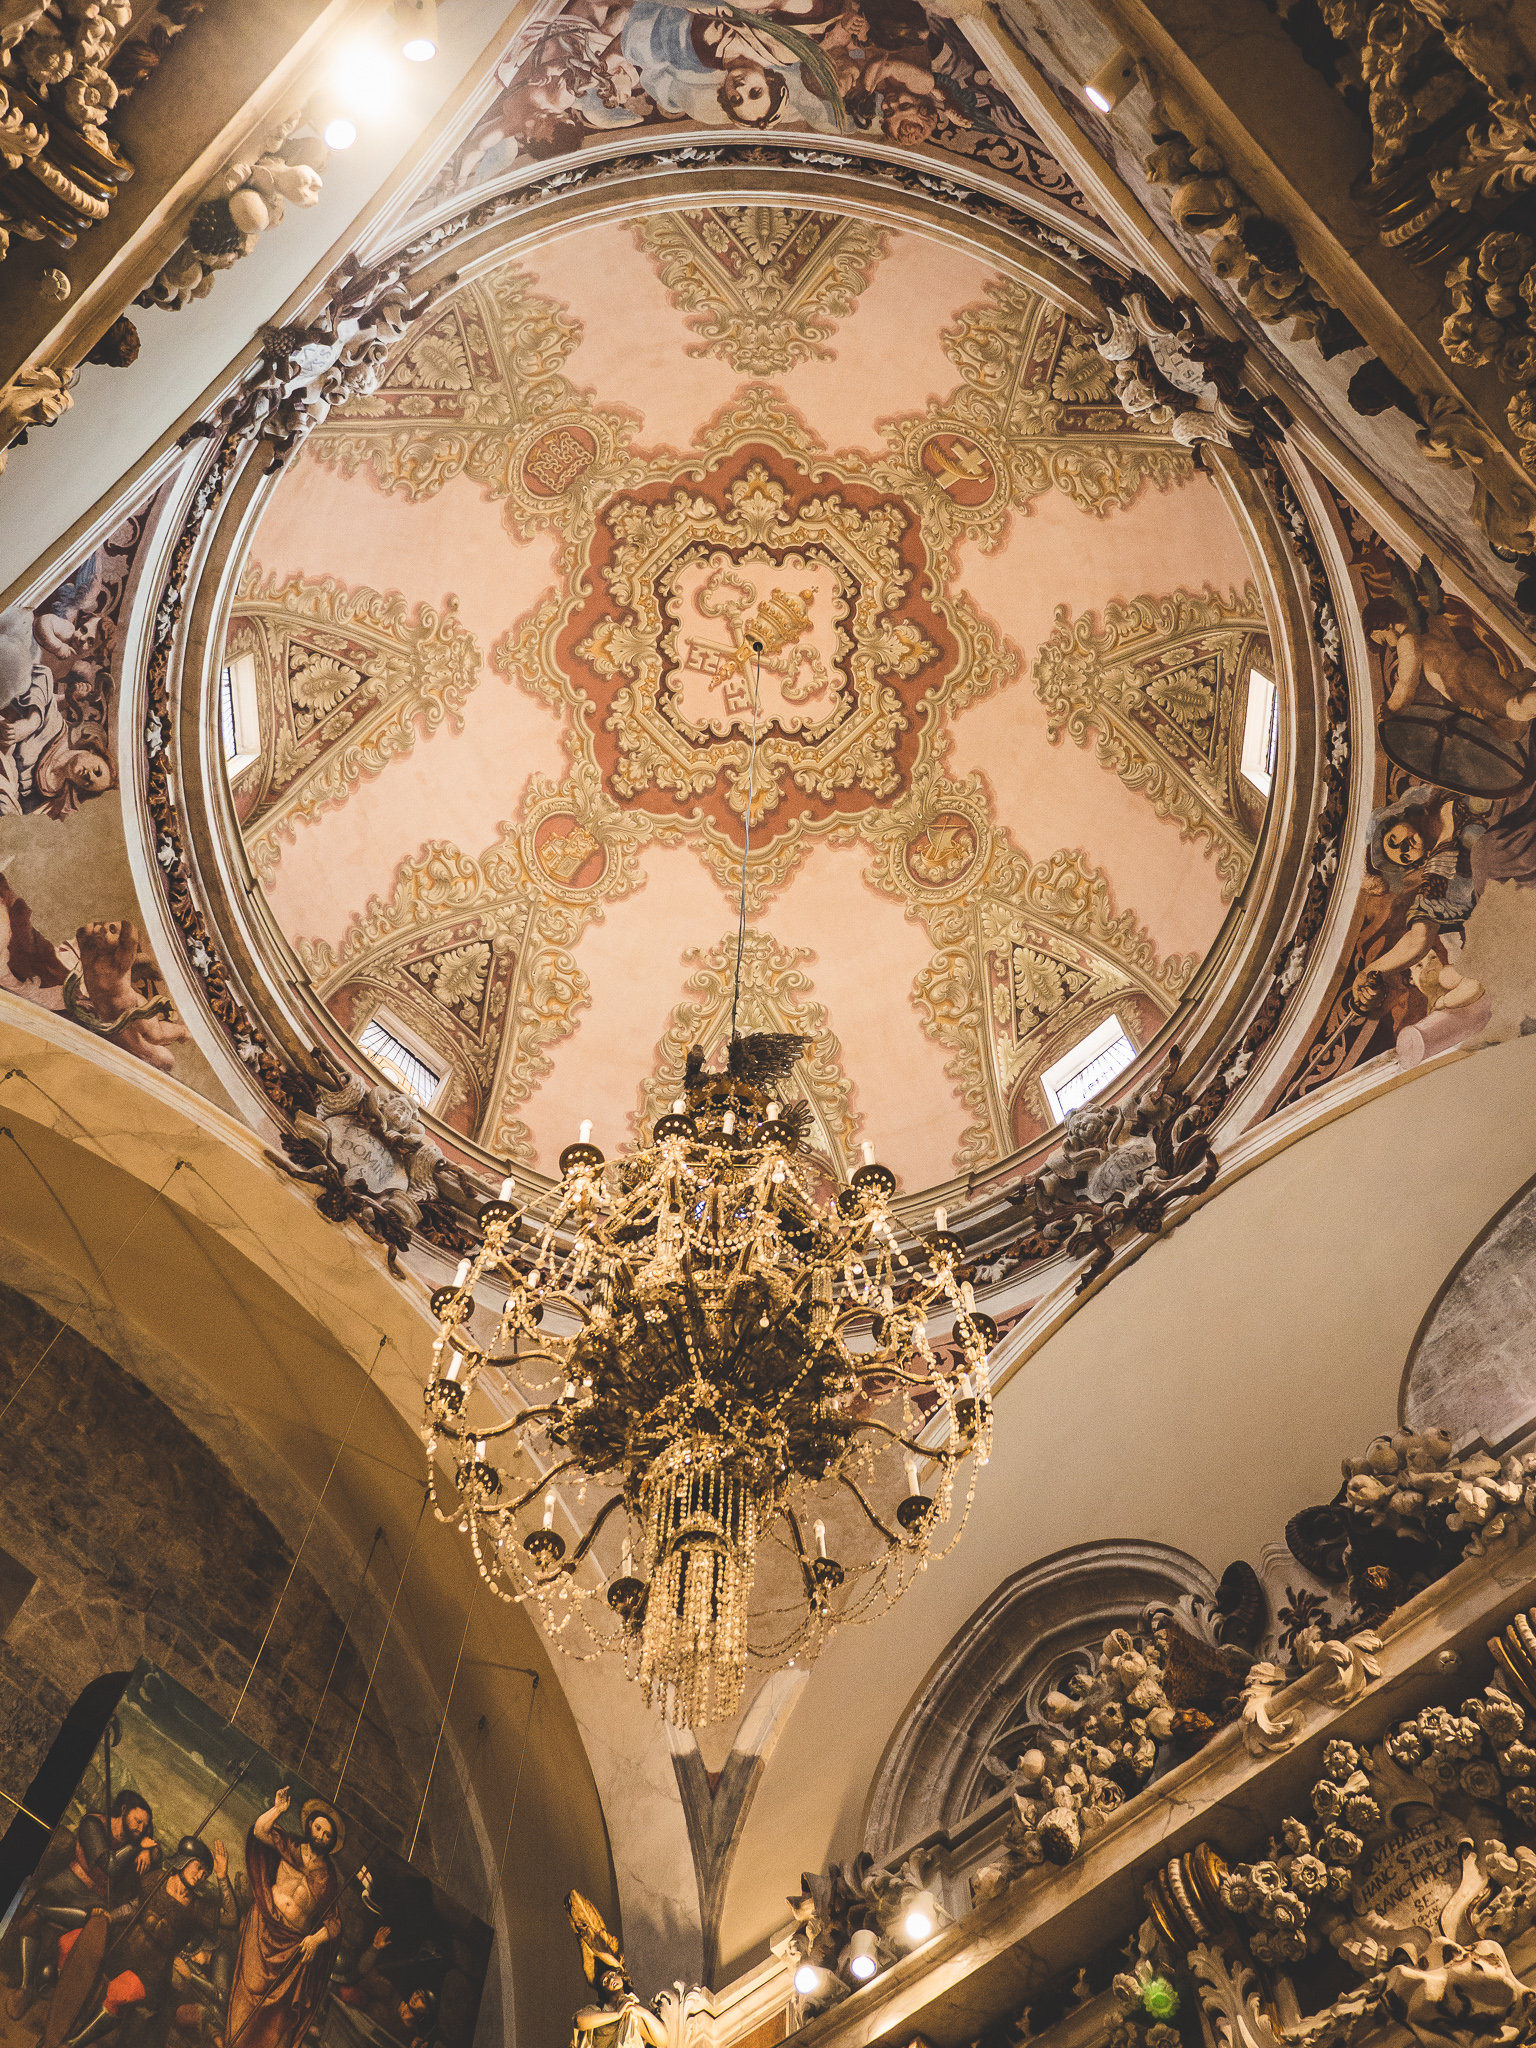 Le plafond de la cathédrale de Valencia est incroyable. 